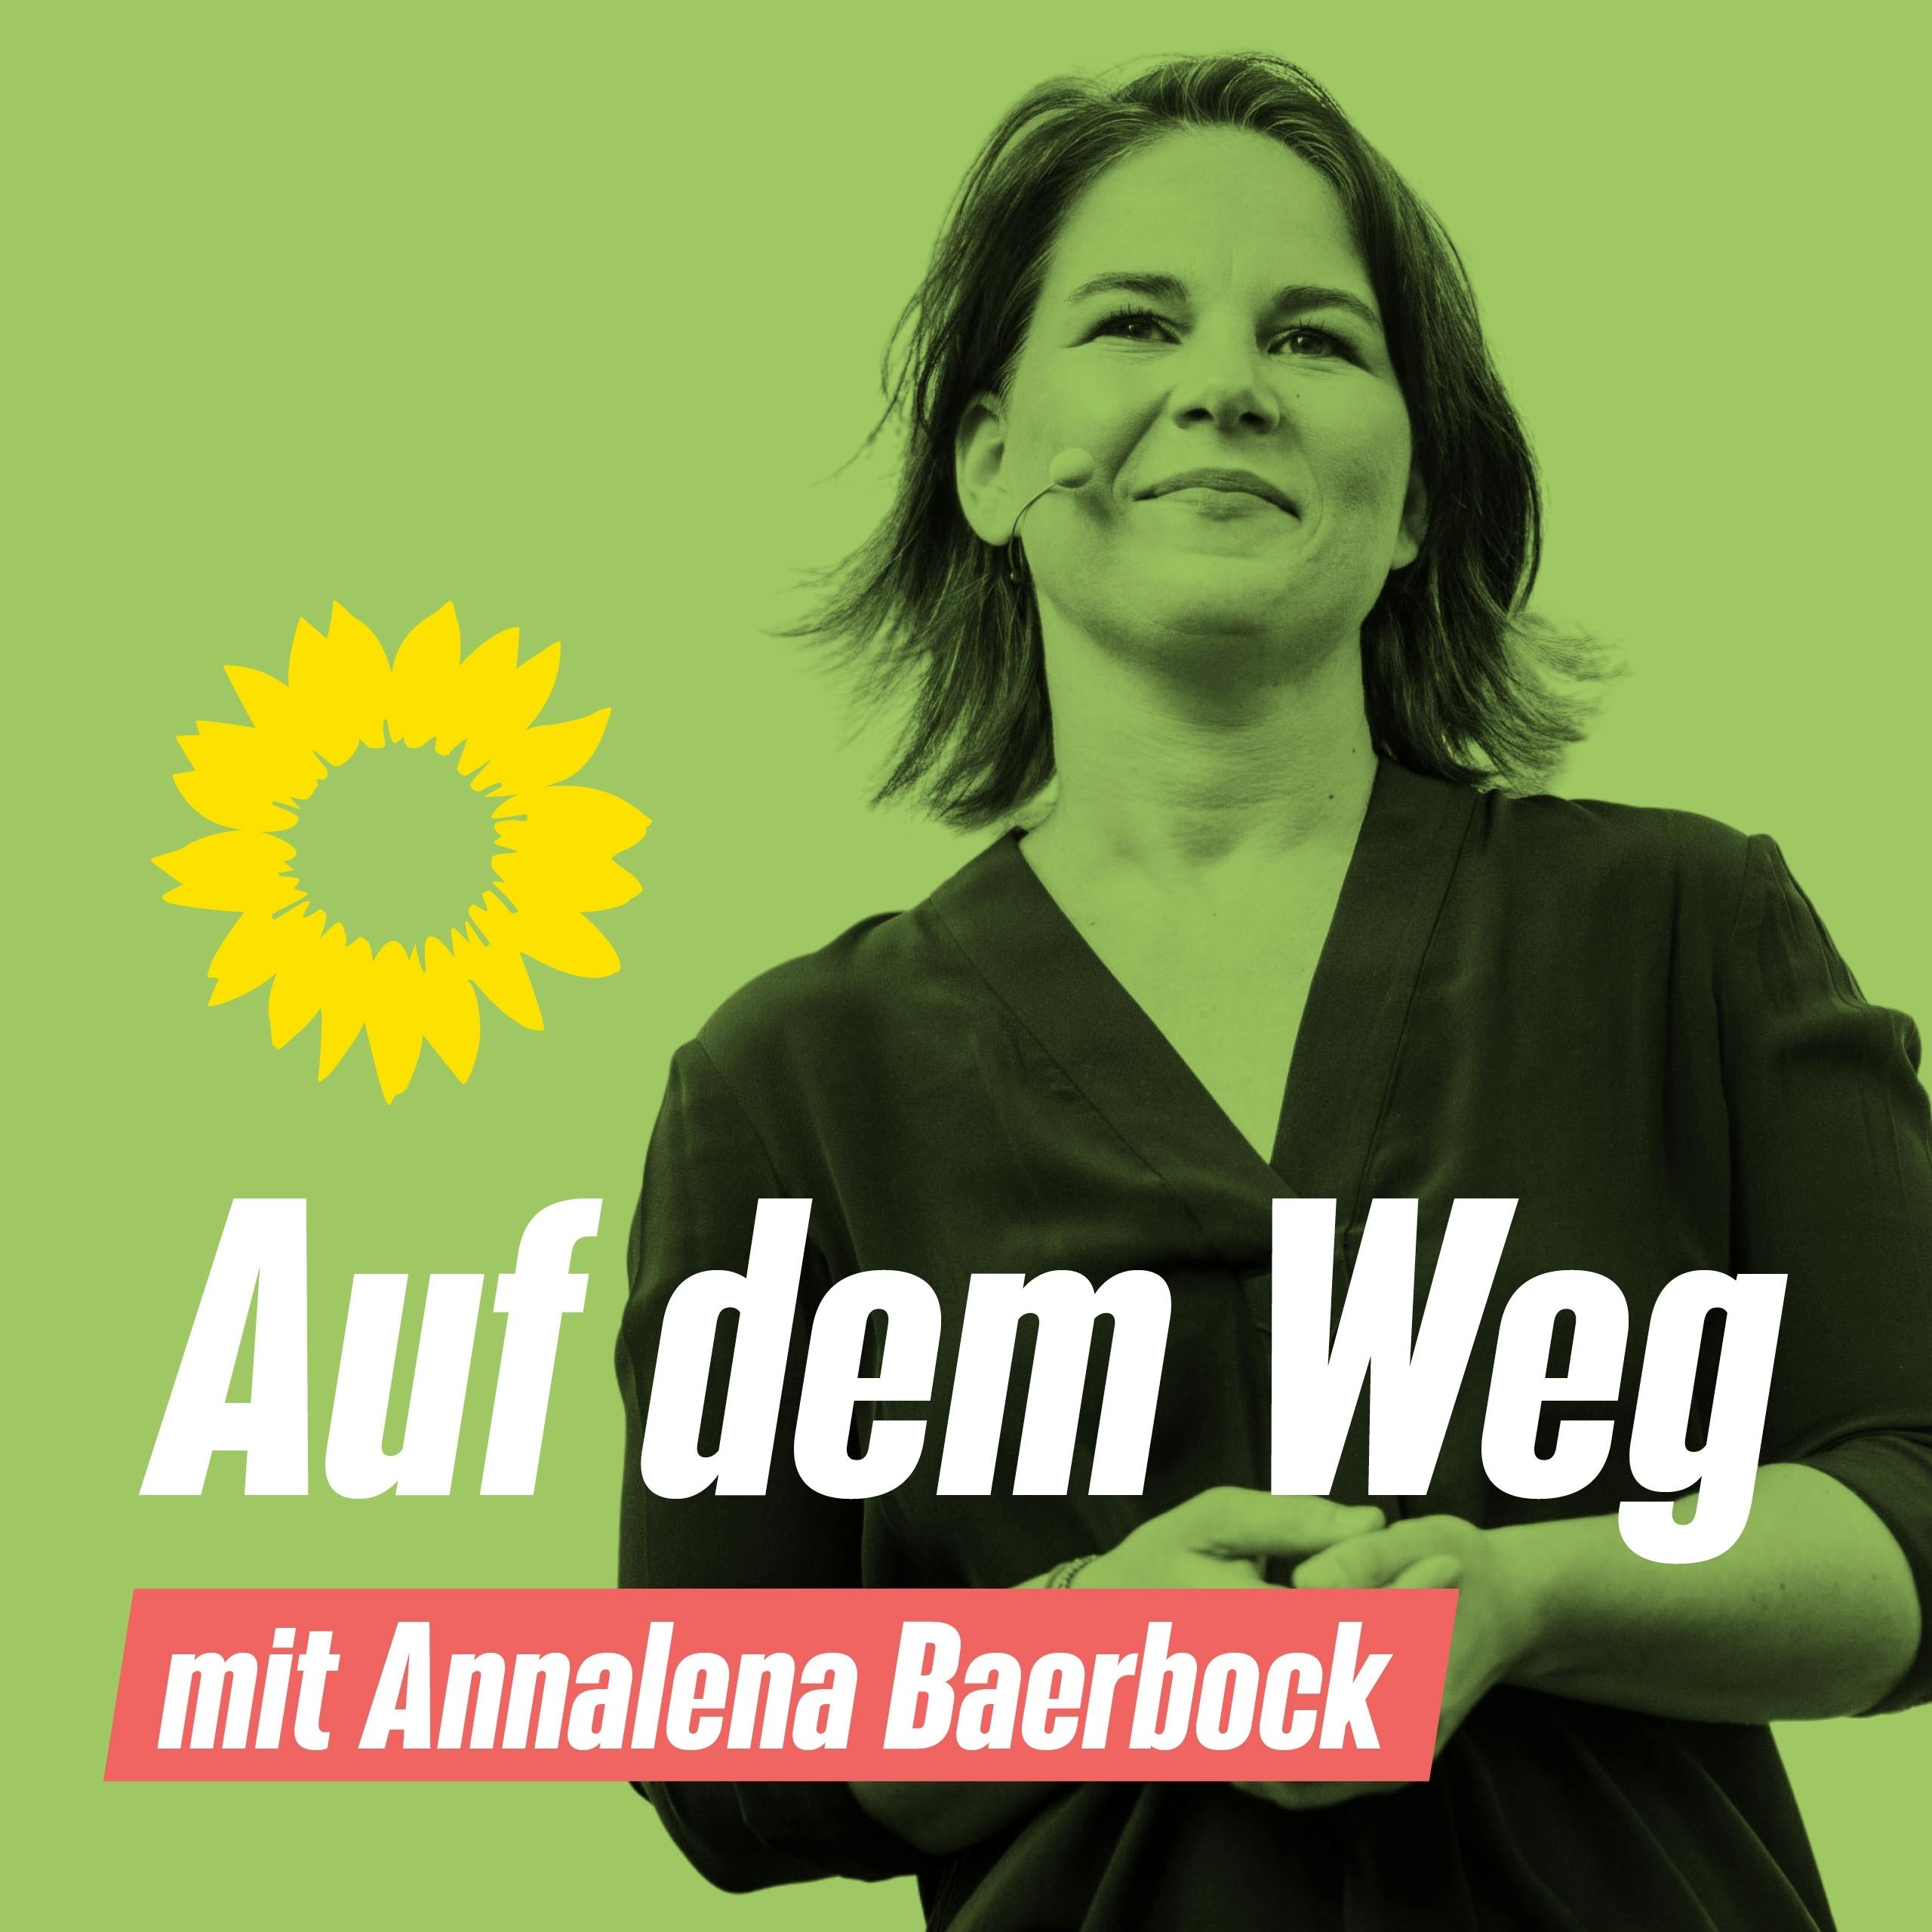 Portrait von Annalena Baerbock mit Headset. Aufschrift: "Auf dem Weg - mit Annalena Baerbock"